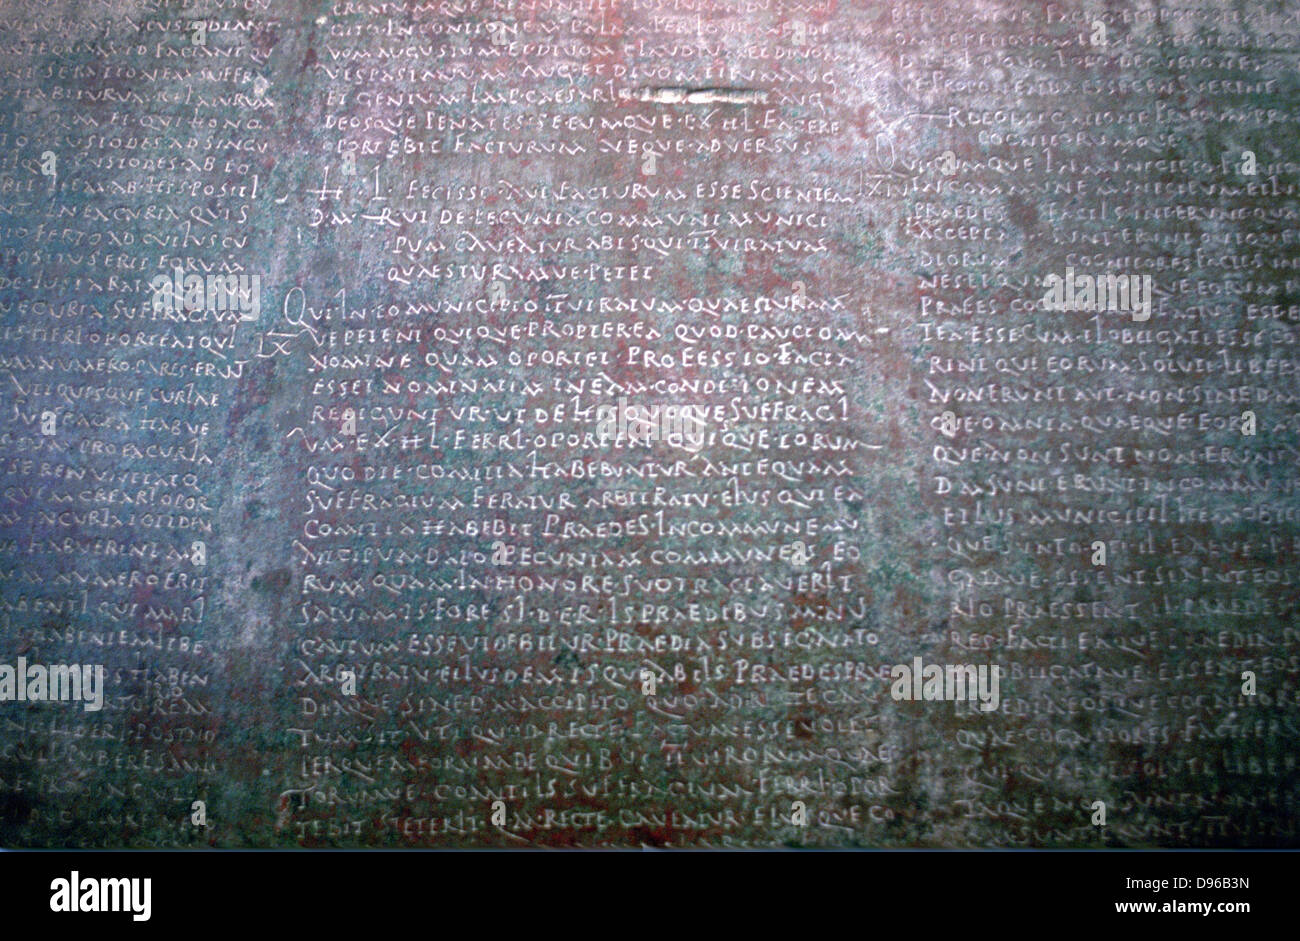 Ancinet römische Inschrift auf Stein aus Spanien. Archäologisches Museum, Madrid, Spanien. Stockfoto